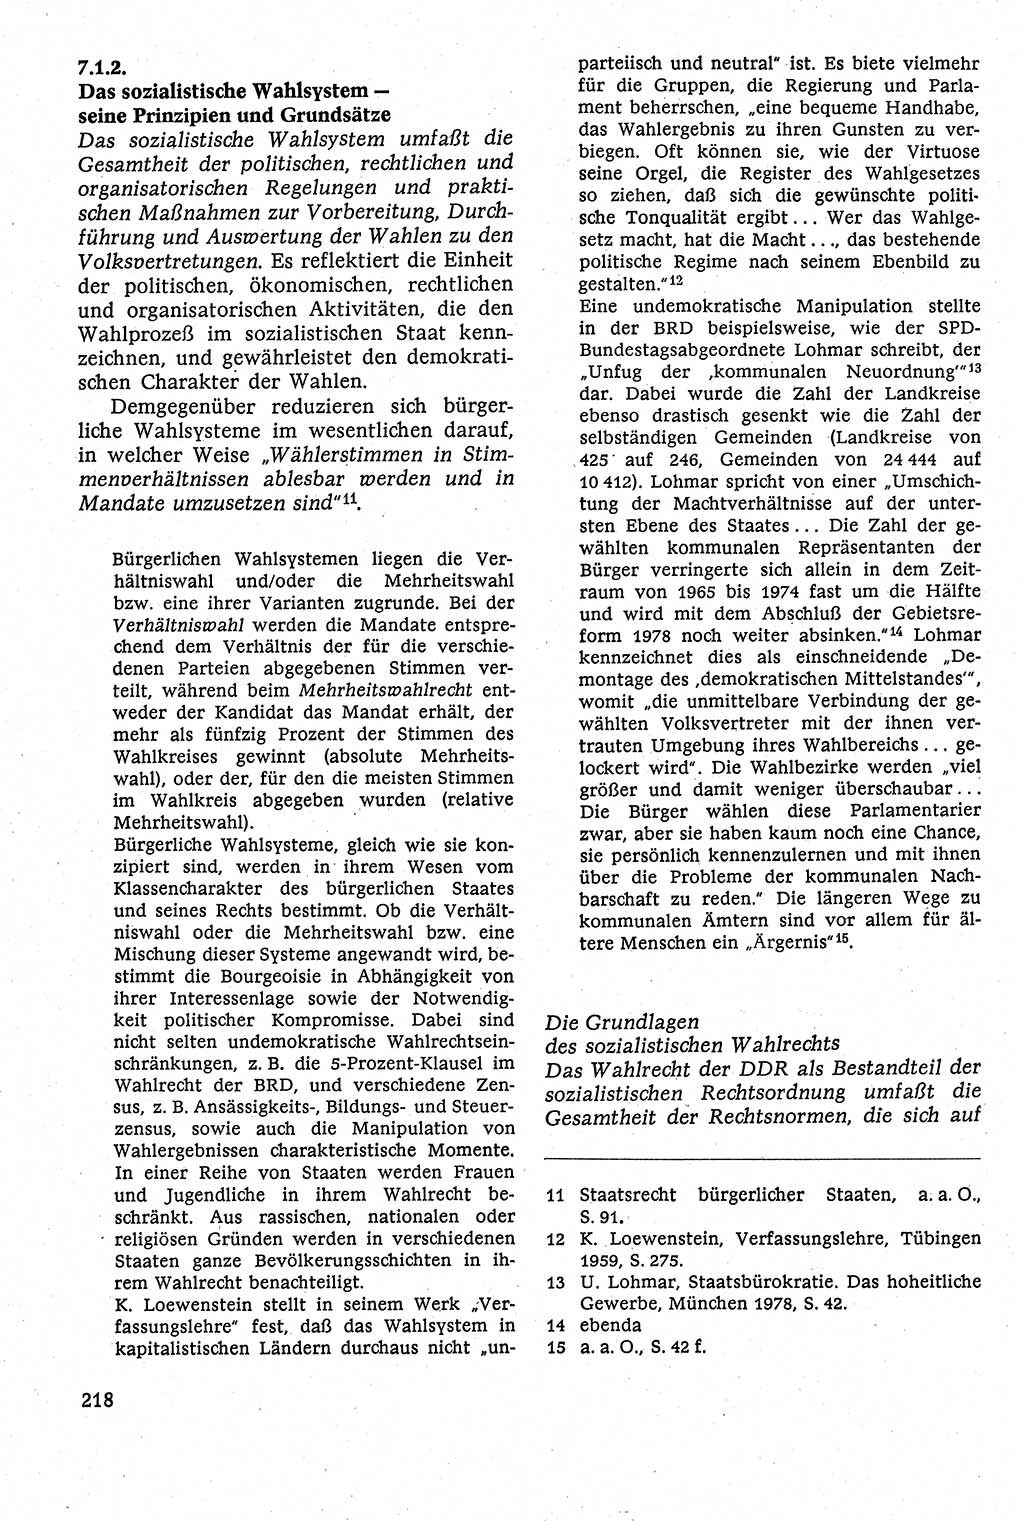 Staatsrecht der DDR [Deutsche Demokratische Republik (DDR)], Lehrbuch 1984, Seite 218 (St.-R. DDR Lb. 1984, S. 218)